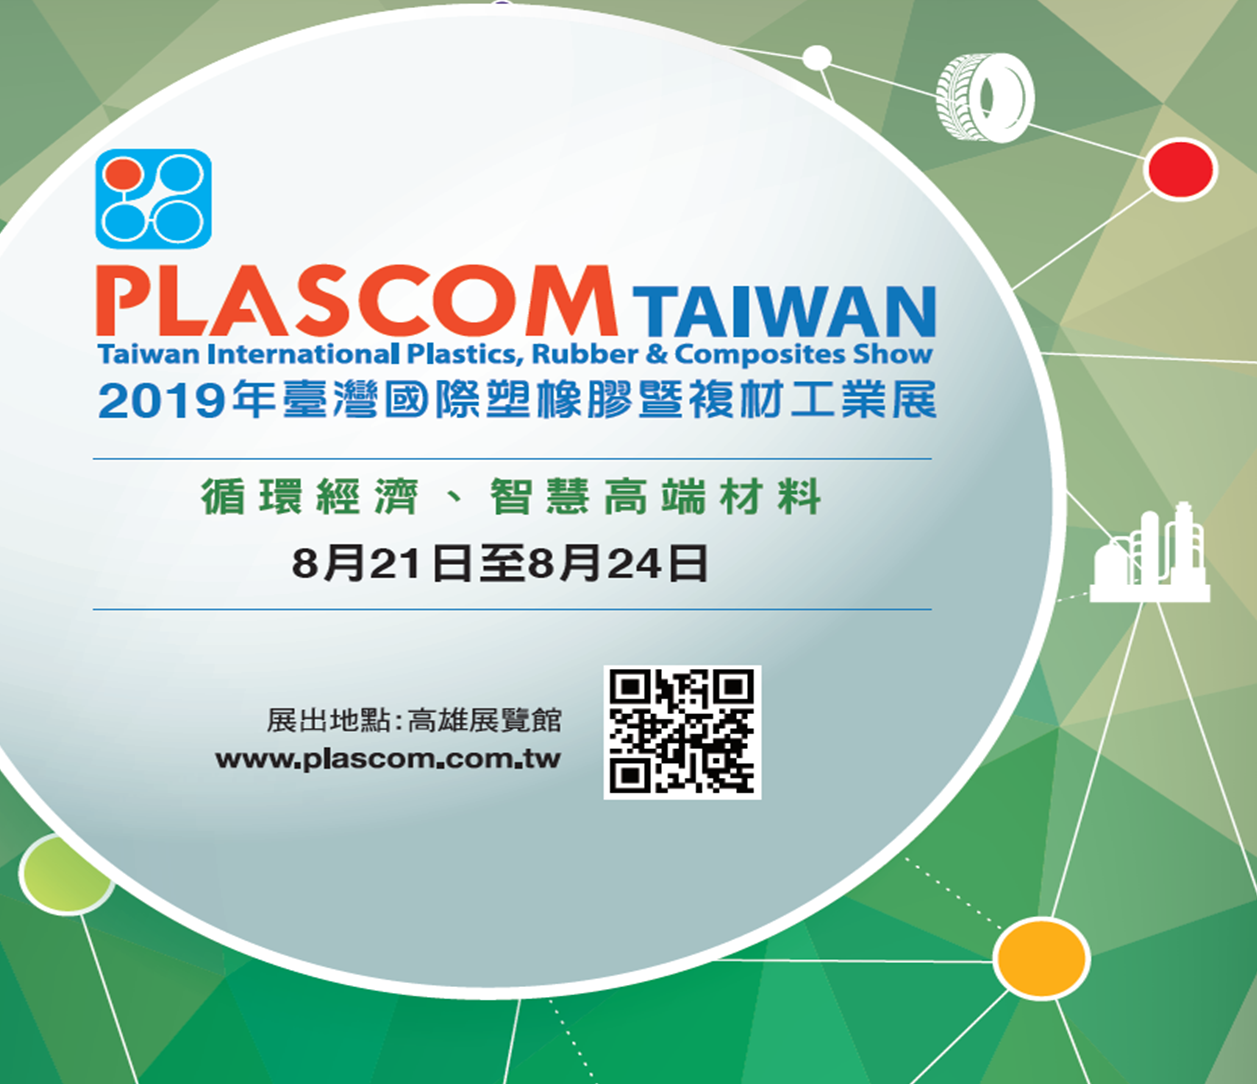 PLASCOM TAIWAN 2019年臺灣國際塑橡膠暨複材工業展(循環經濟、智慧高端材料)